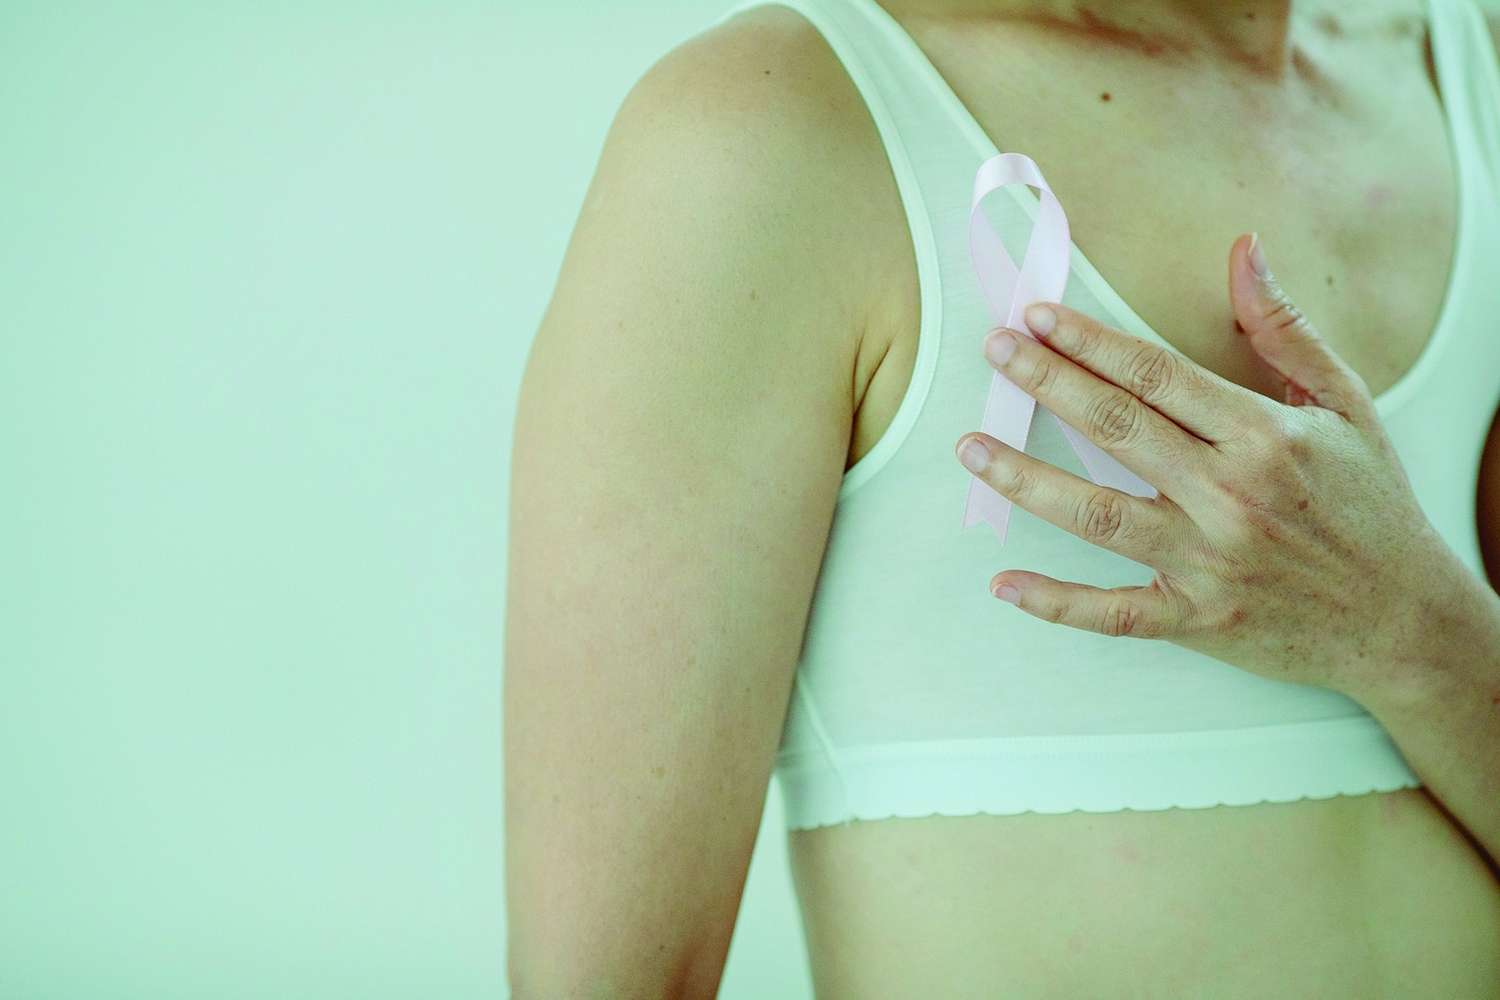 Cáncer de mama: los principales avances y los desafíos que persisten